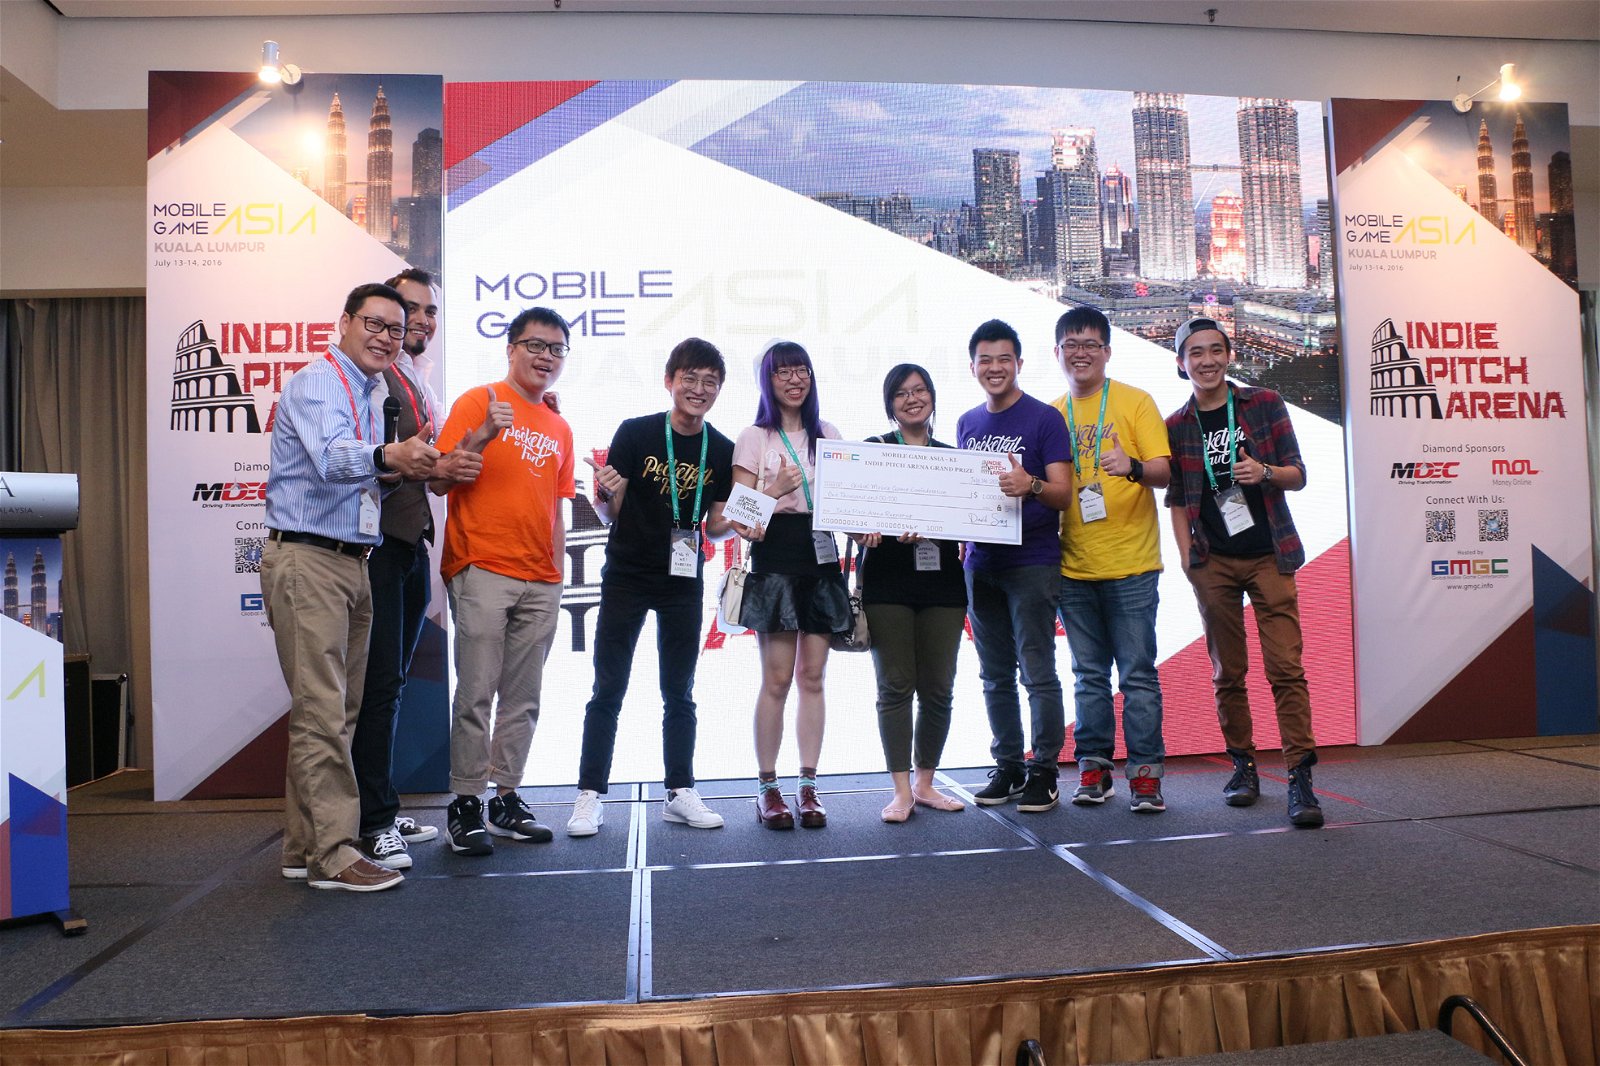 2016 年， 全球移动游戏大会（GMGC）在吉隆坡举办的亚洲移动游戏大会上，Kurechii以《邮差骑士》夺得独立游戏开发者大赛（Indie PitchArena）的亚军。